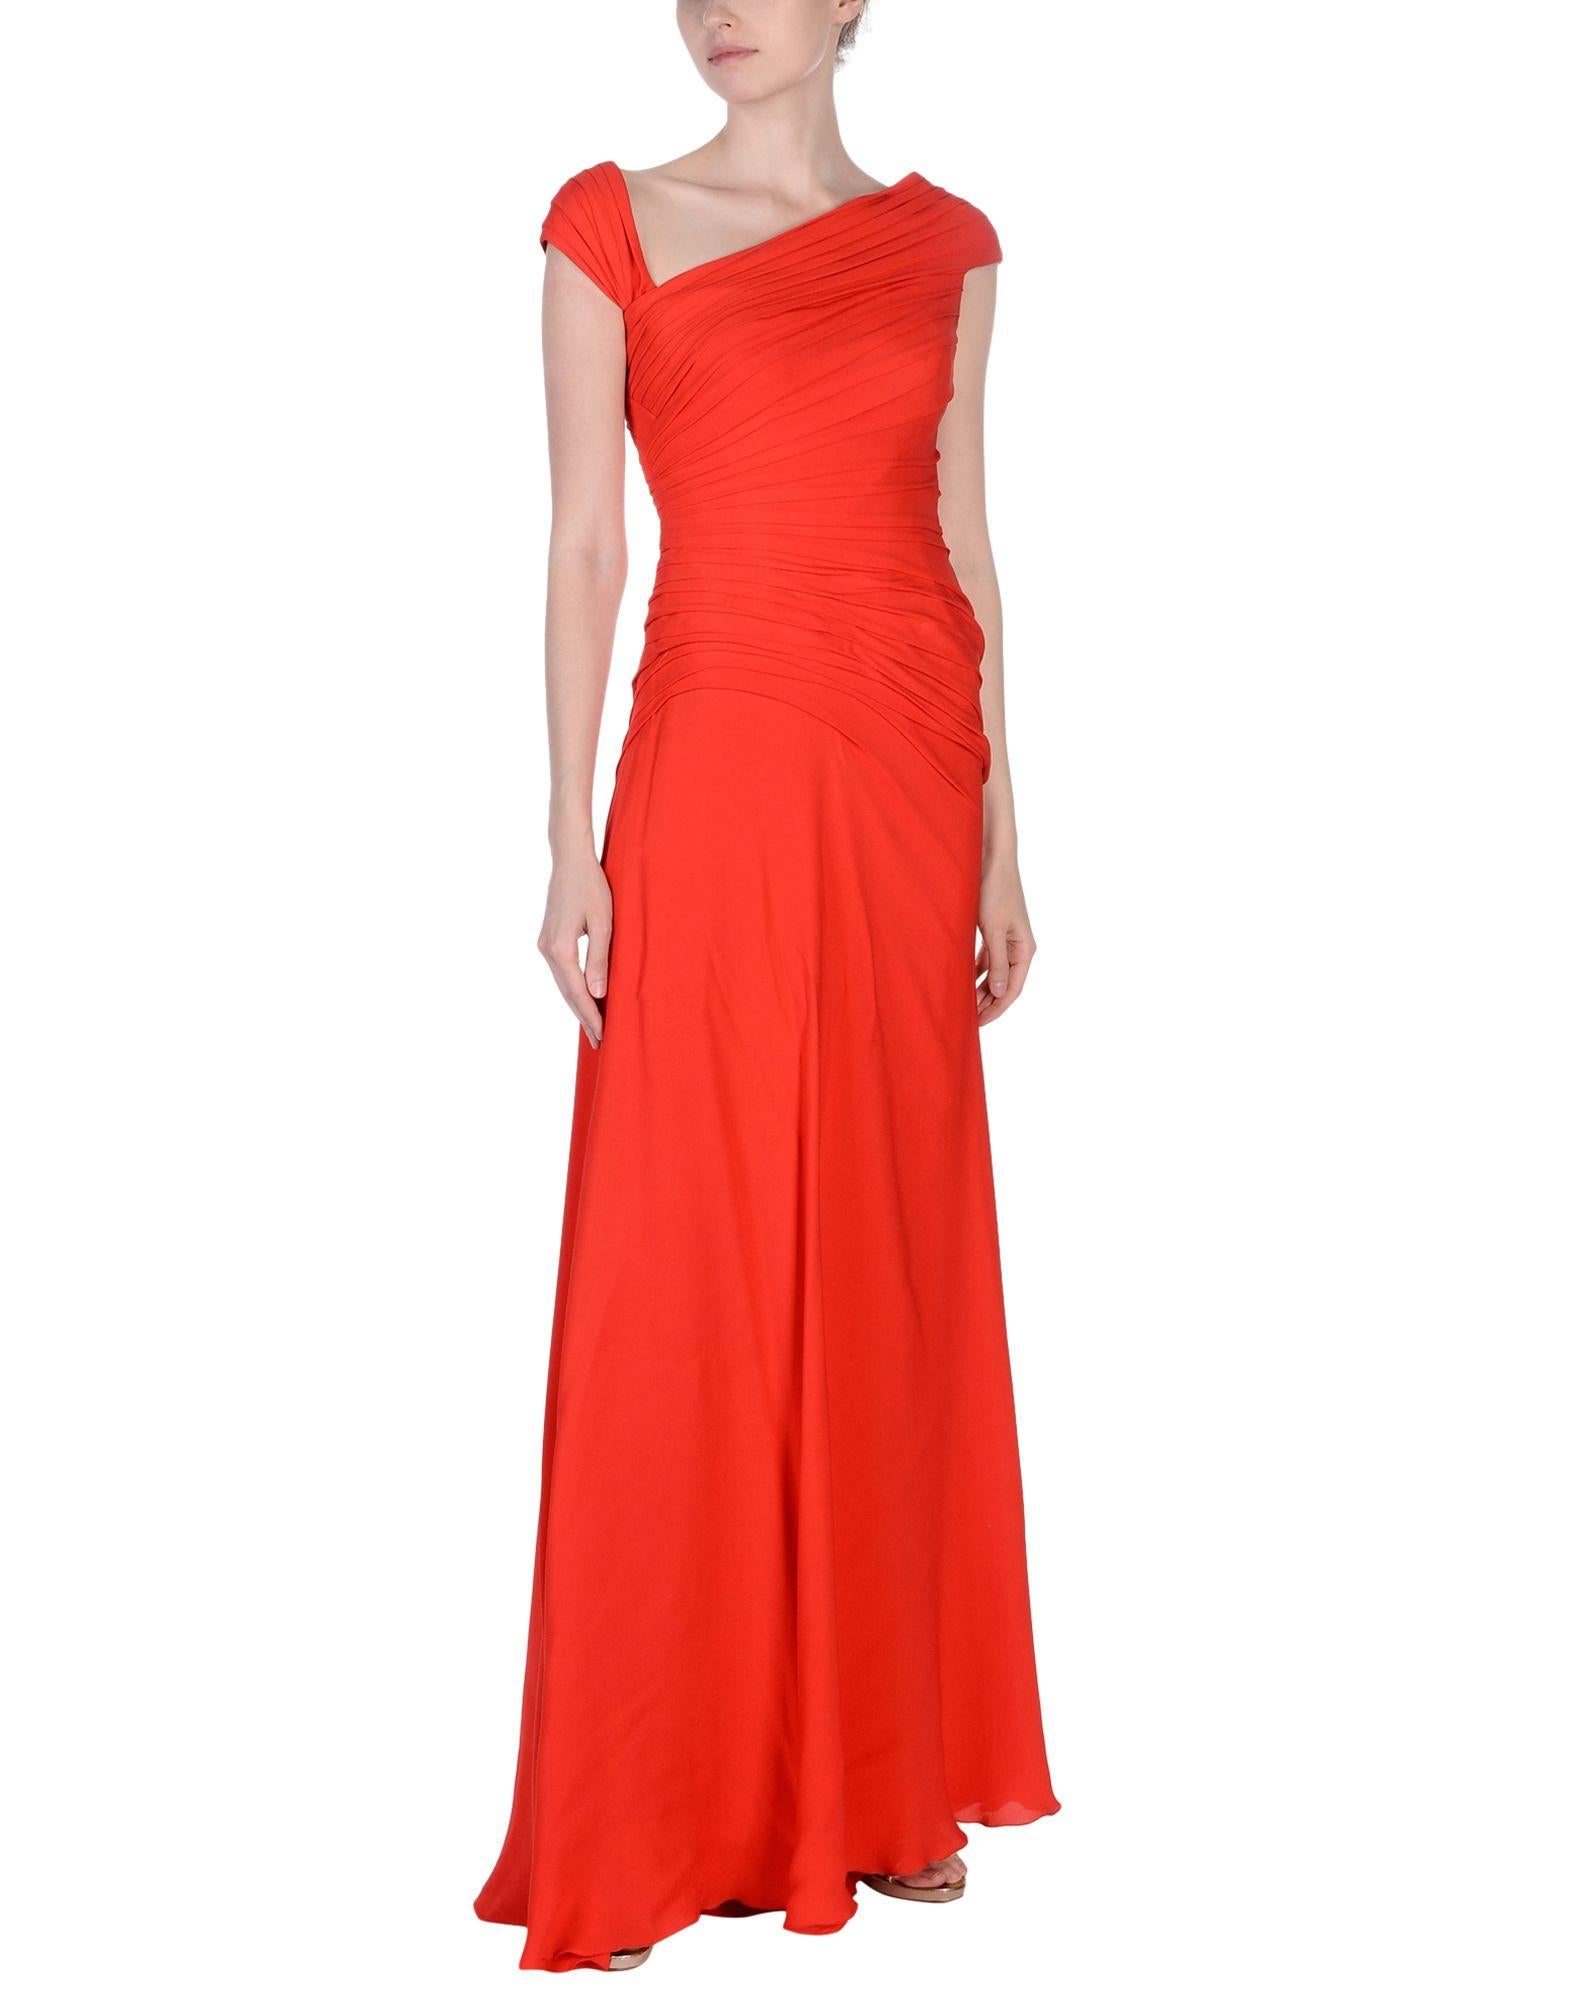 New Versace Lipstick Red Silk Corset Long Dress Gown
Design/One taille 42
100 % soie, style corset, petite traîne, entièrement doublée de soie, fermeture à glissière, tissu extensible.
Mesures : Poitrine - 34/36 pouces, Taille - 28